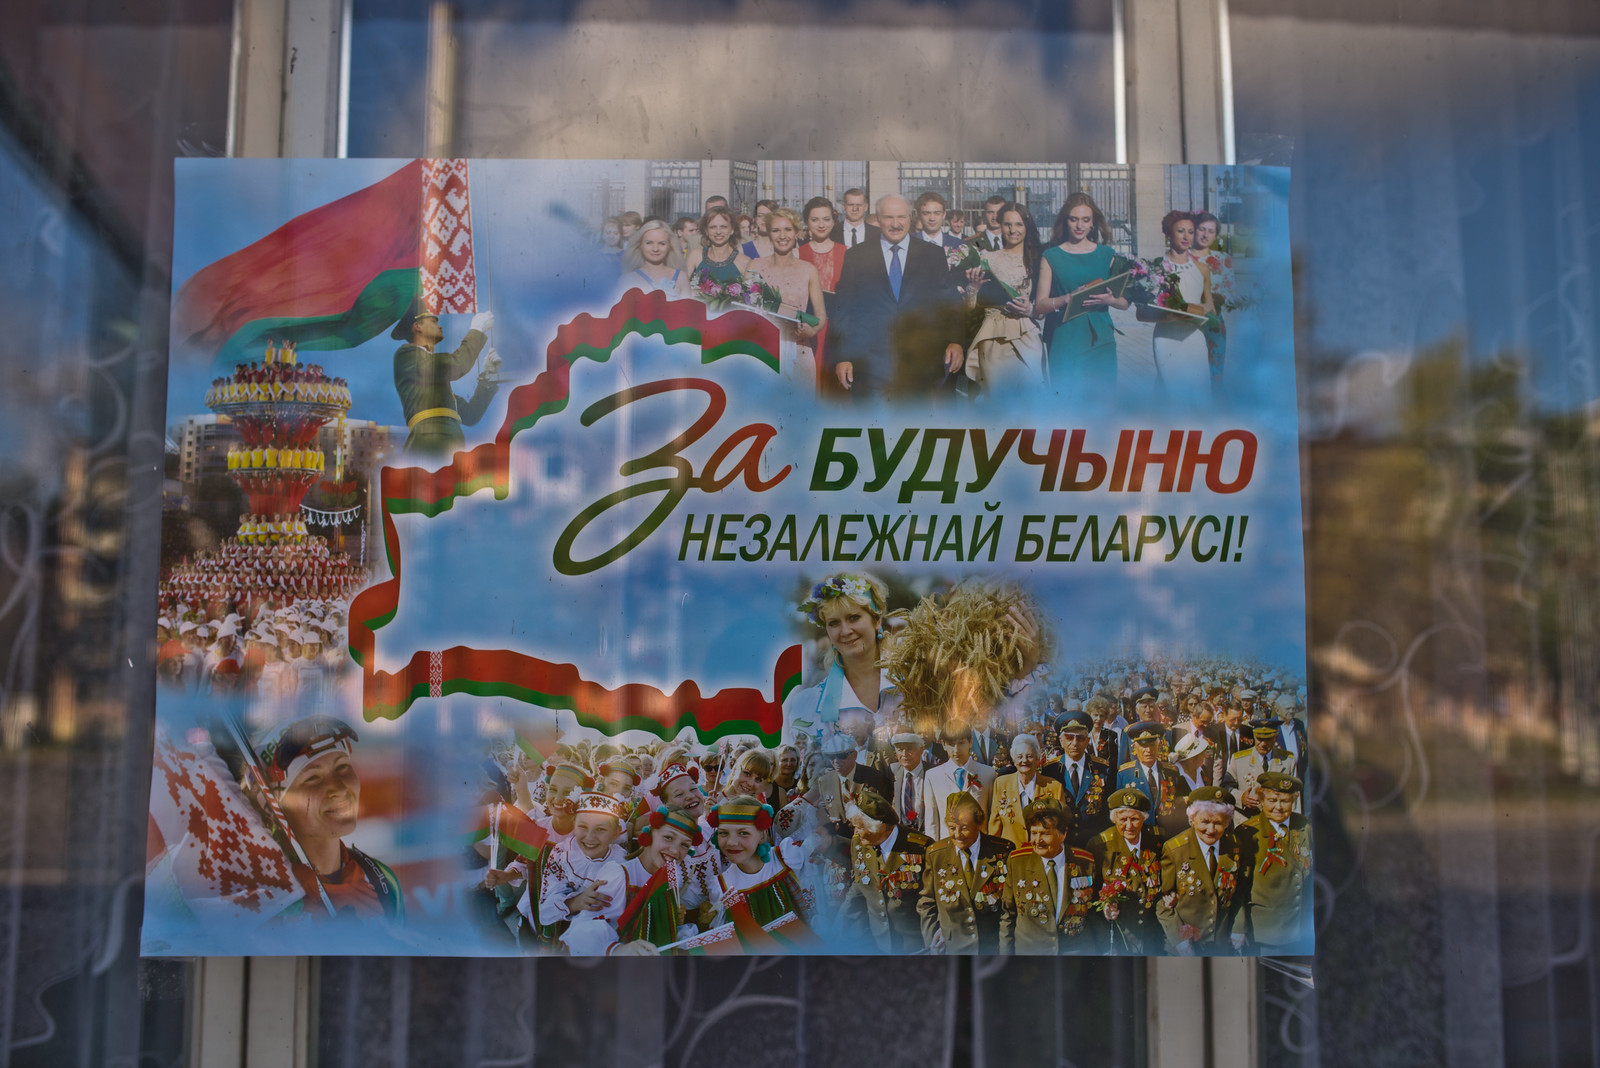 Election poster in Vitebsk